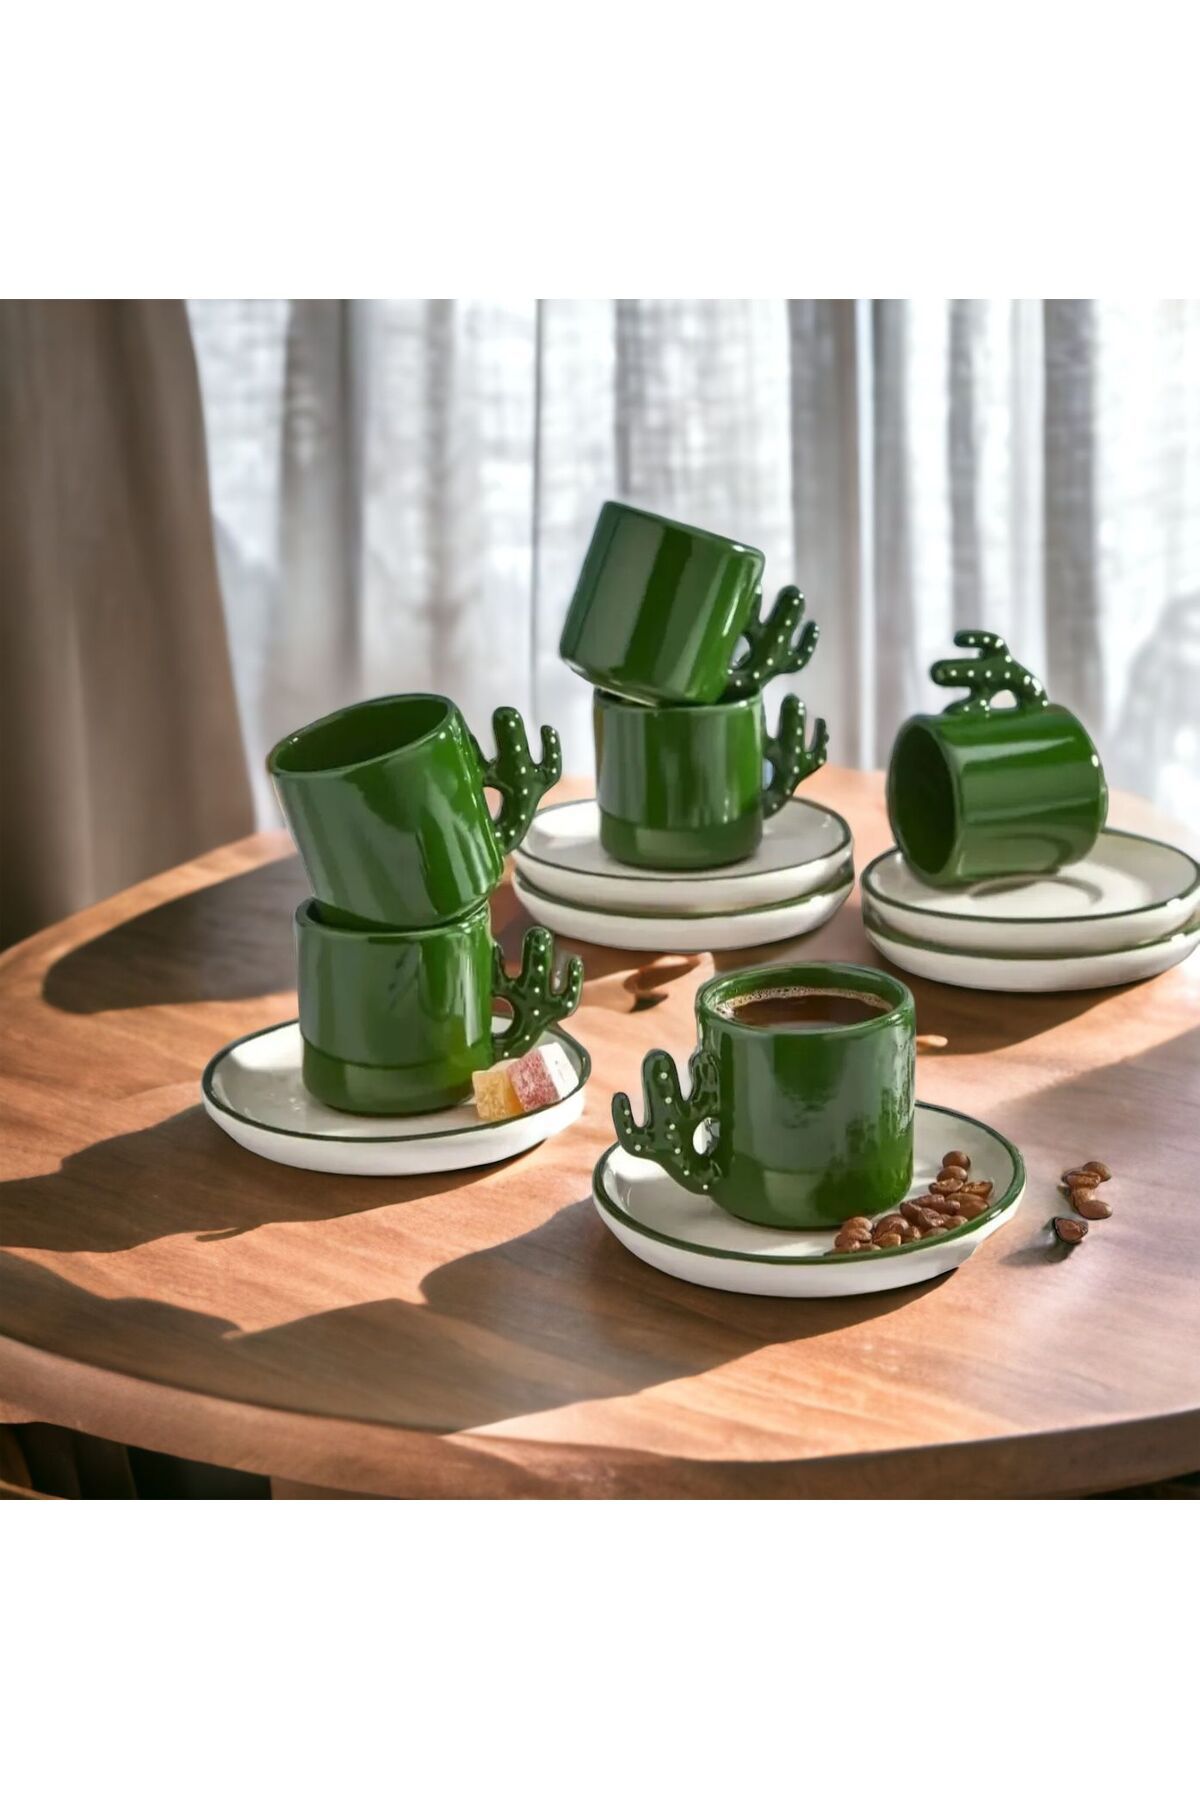 Akkoyunlu home 6 Kişilik Kaktüs Model Fincan Takımı,Kahve Bardağı